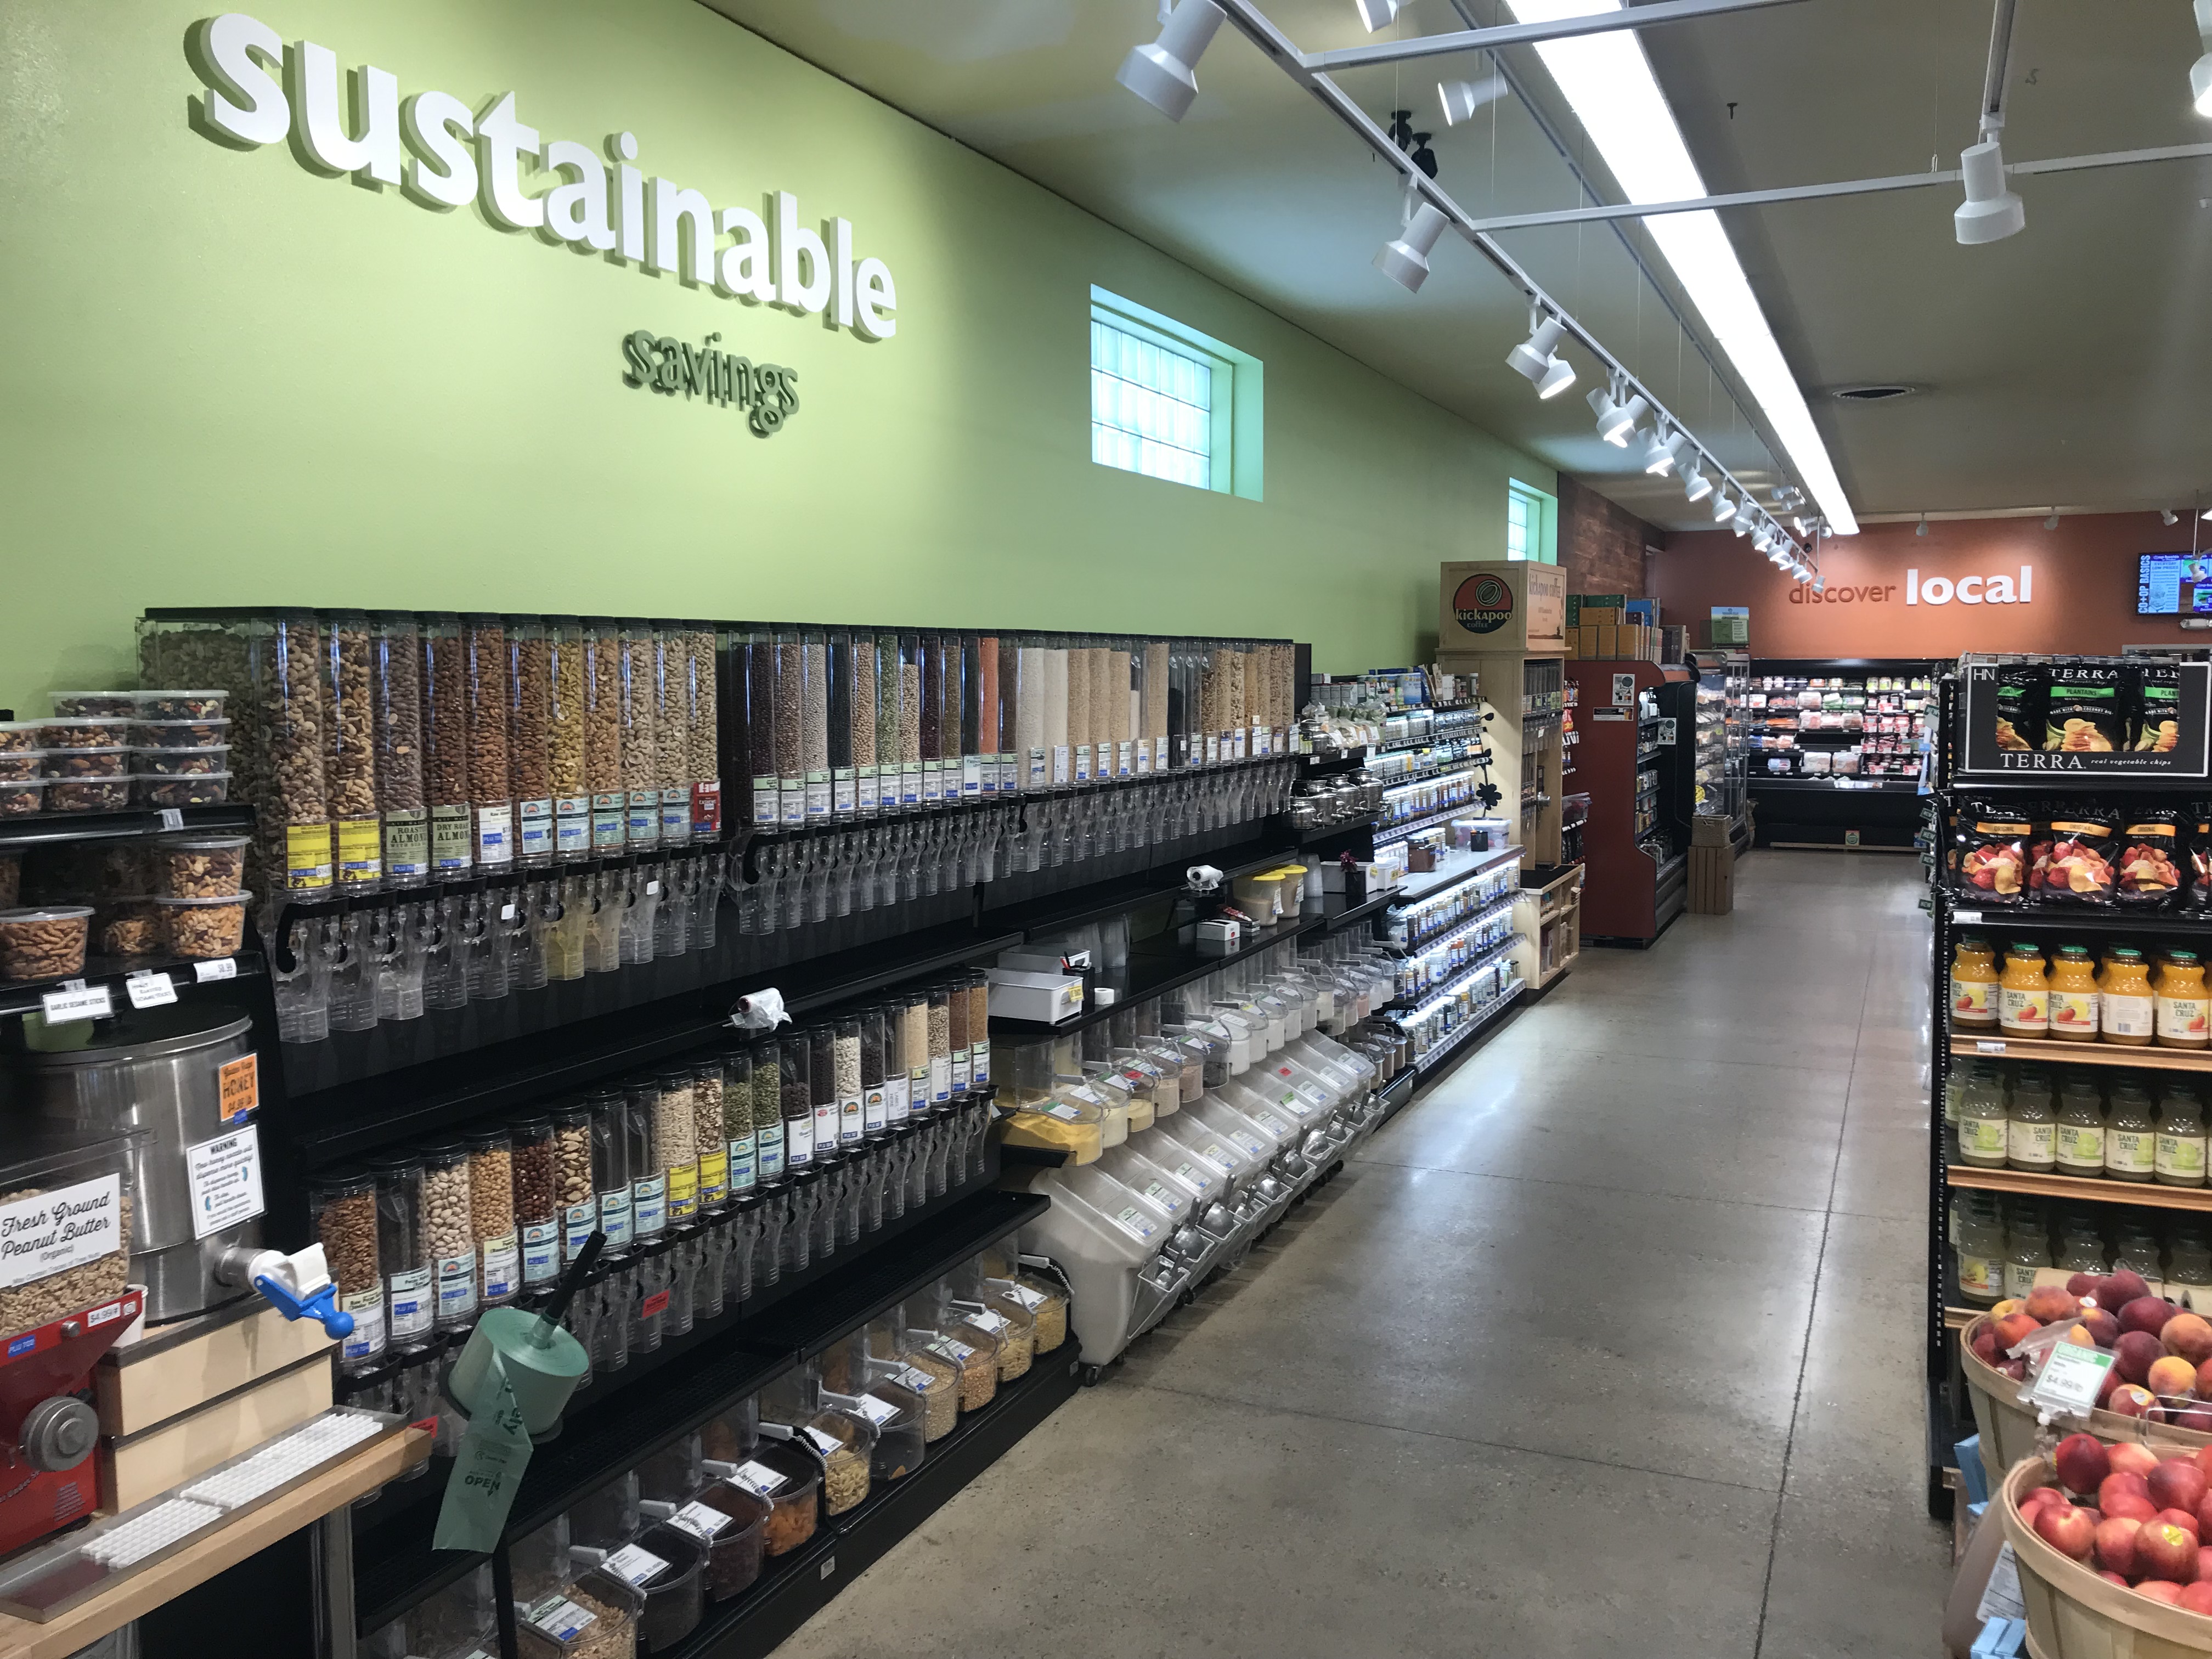 The Iowa Housewife: Bulk Food Storage